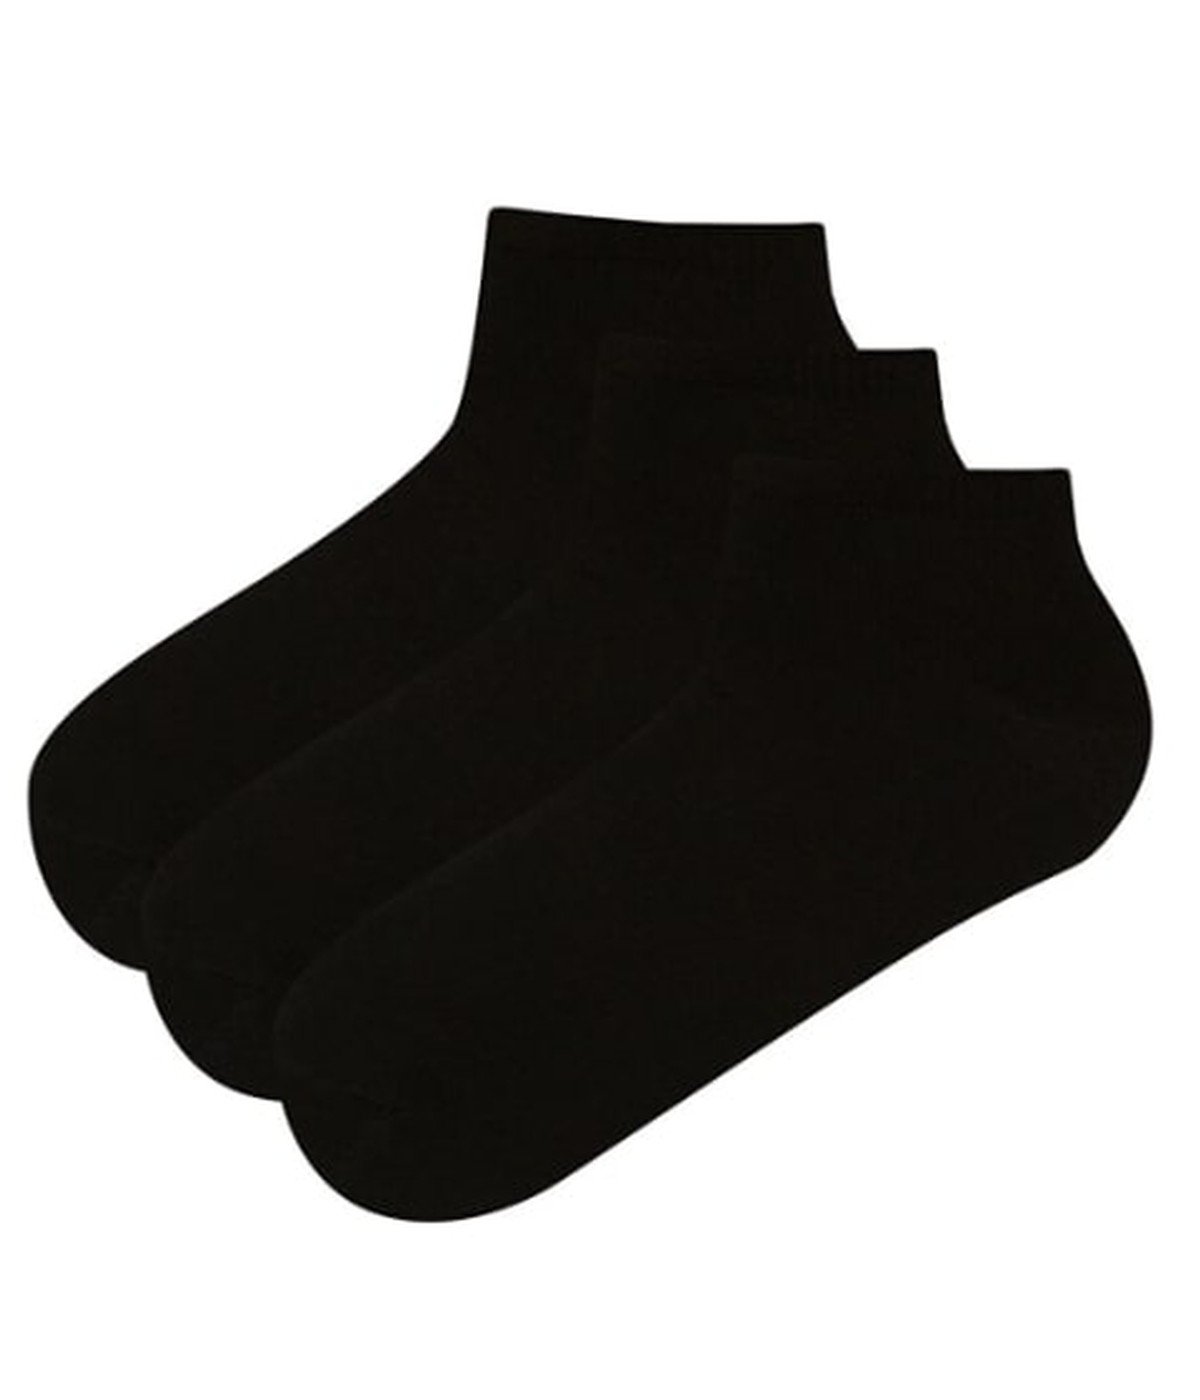 Ciorapi tip talpici pentru barbati Rar - 3 perechi